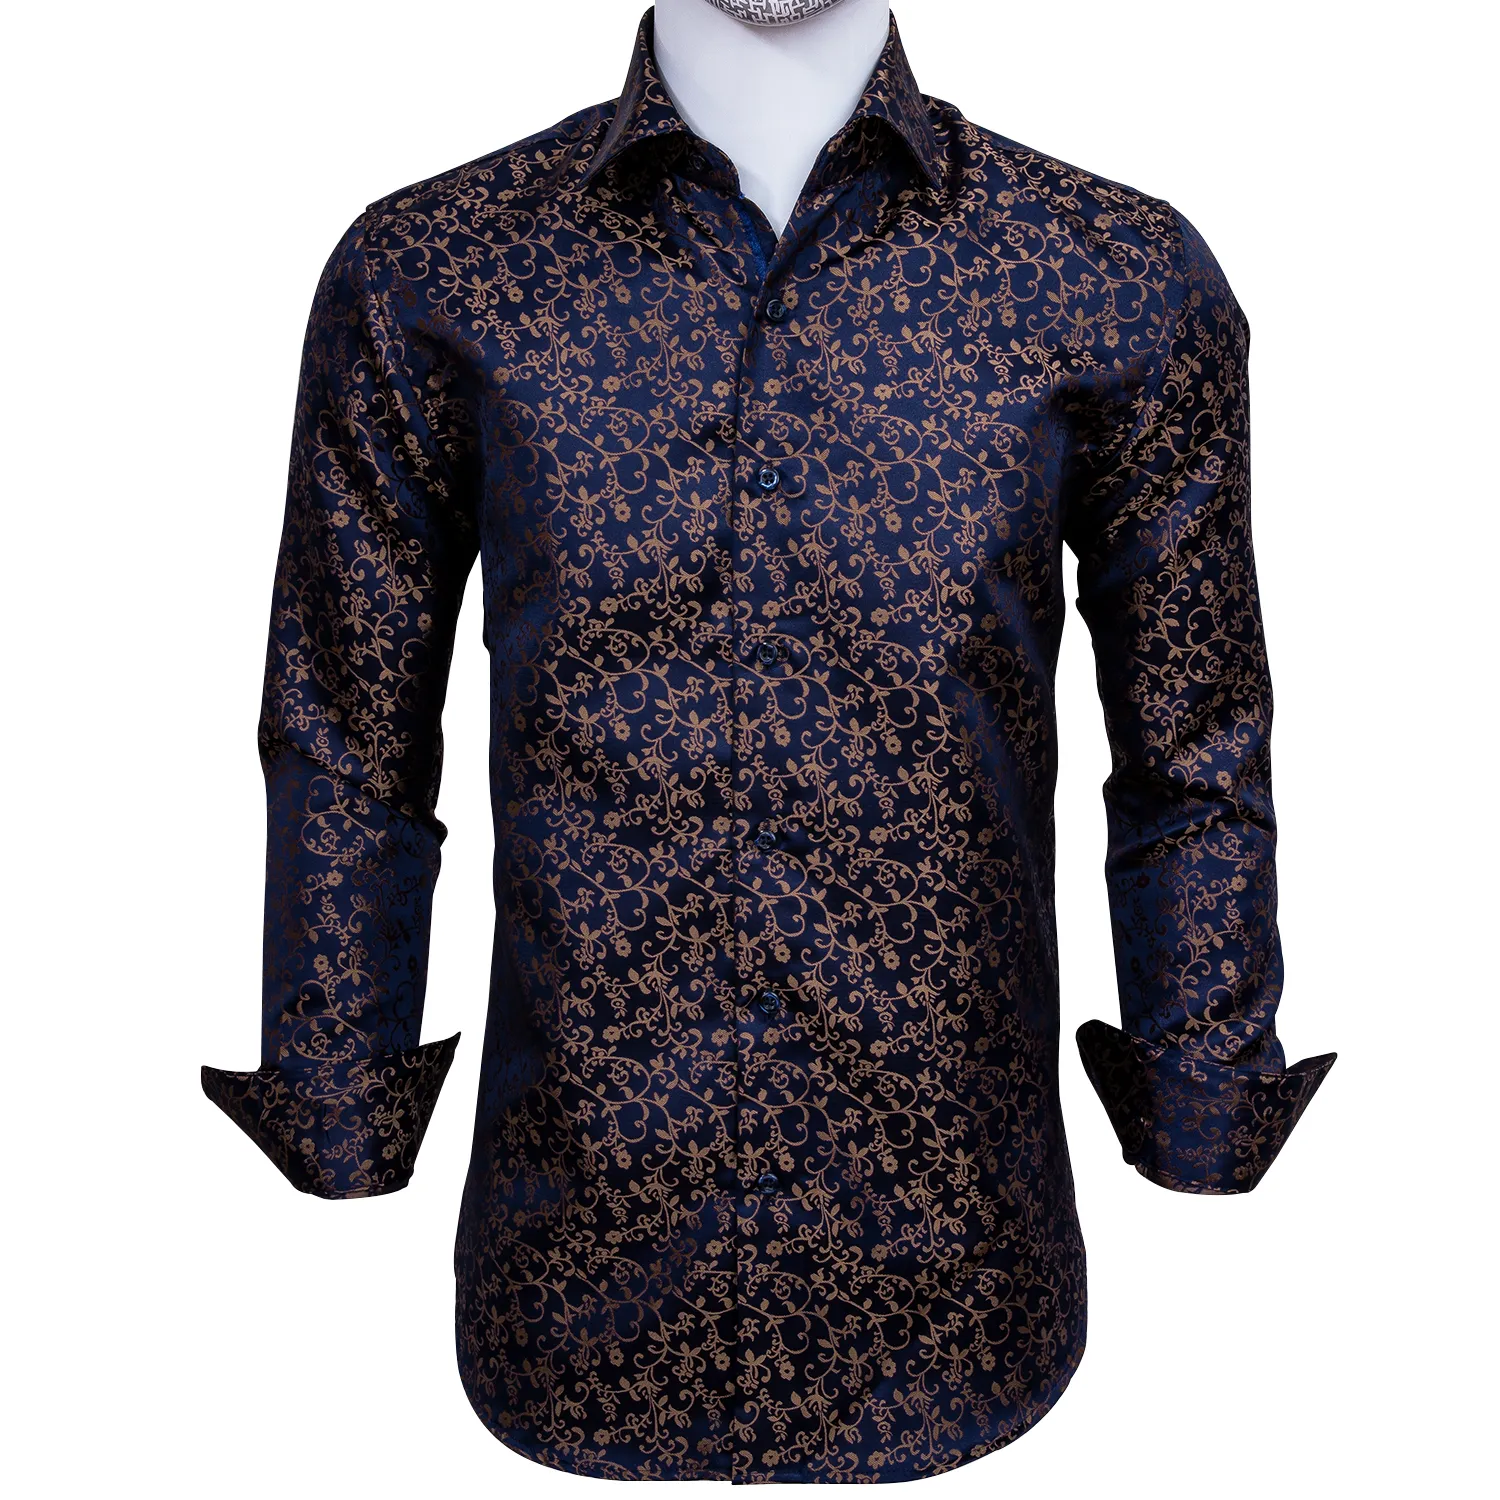 Elbise Parti Düğün Moda nefis CY-0006 için Hızlı Kargo İpek Erkek Gömlek Modelleri Jakarlı Dokuma Mavi Altın Çiçek İnce Gömlek